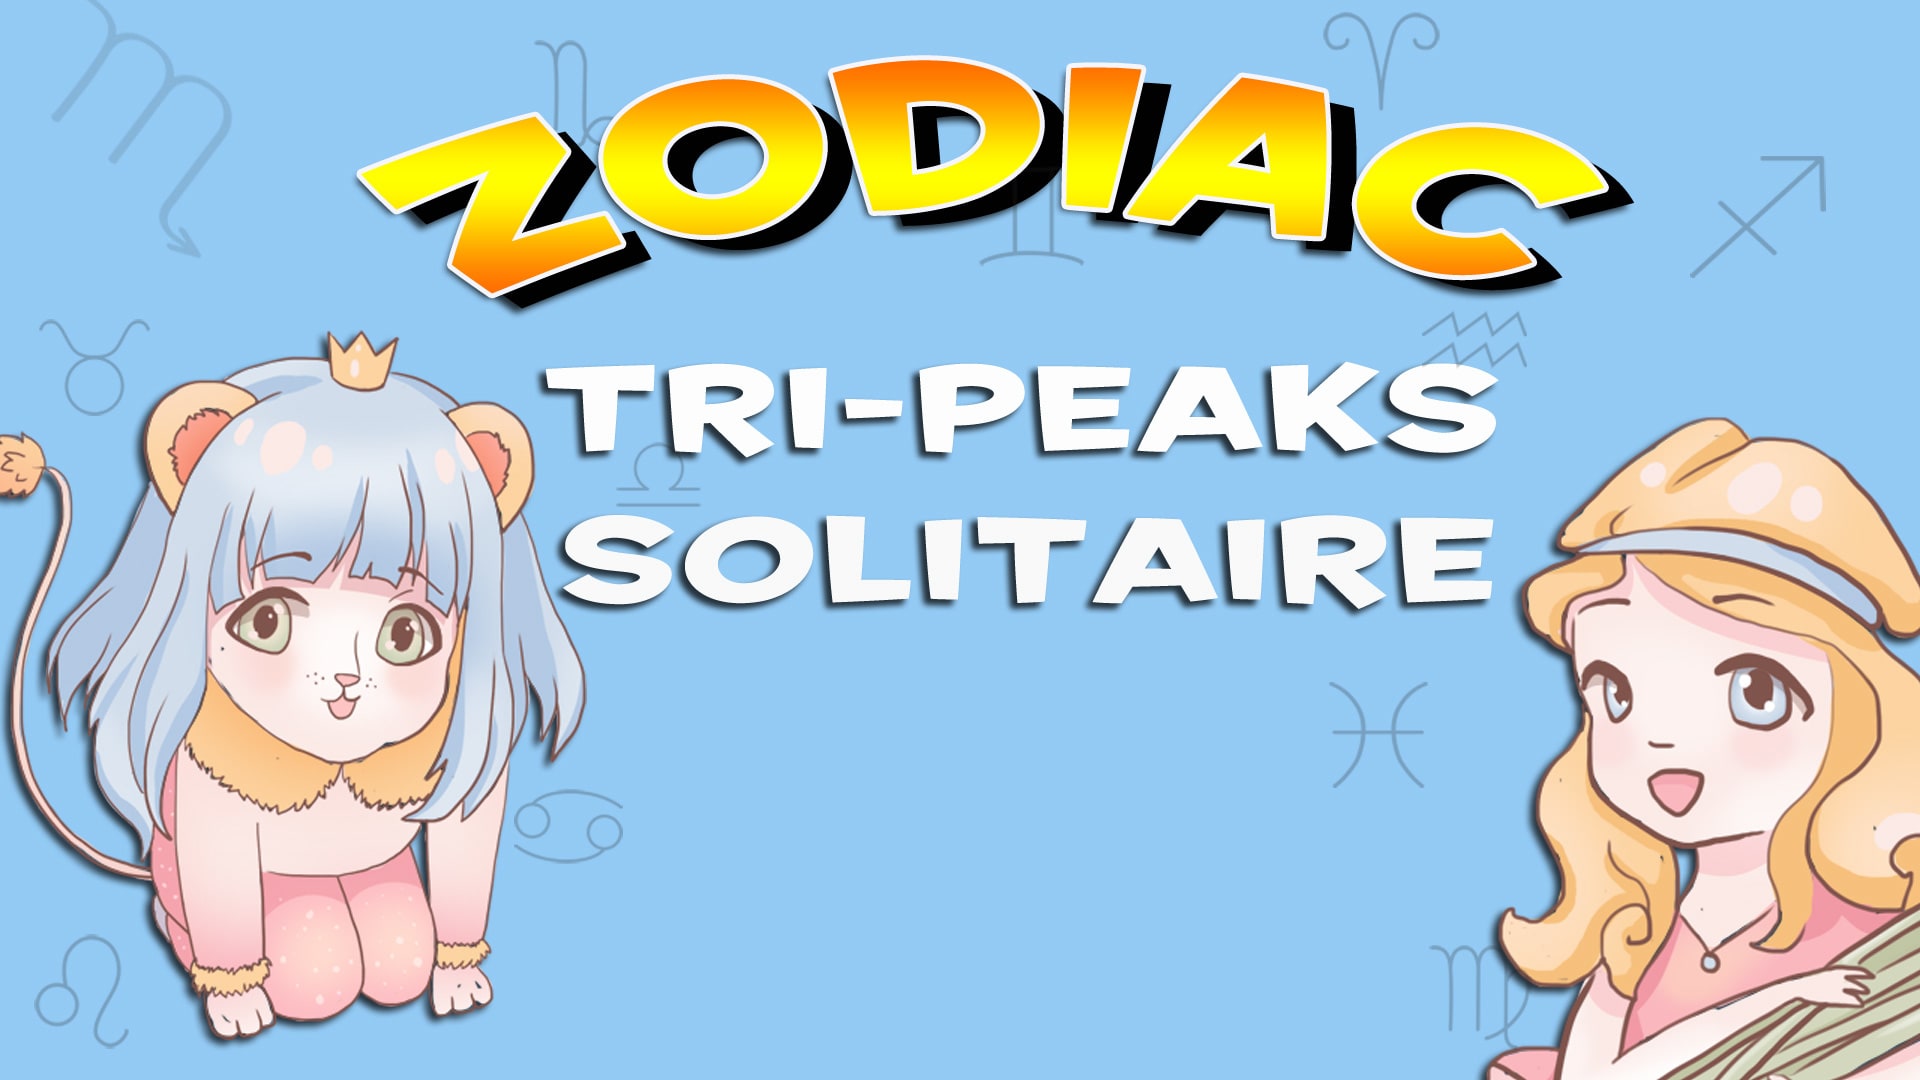 Zodiac Tri Peaks Solitaire